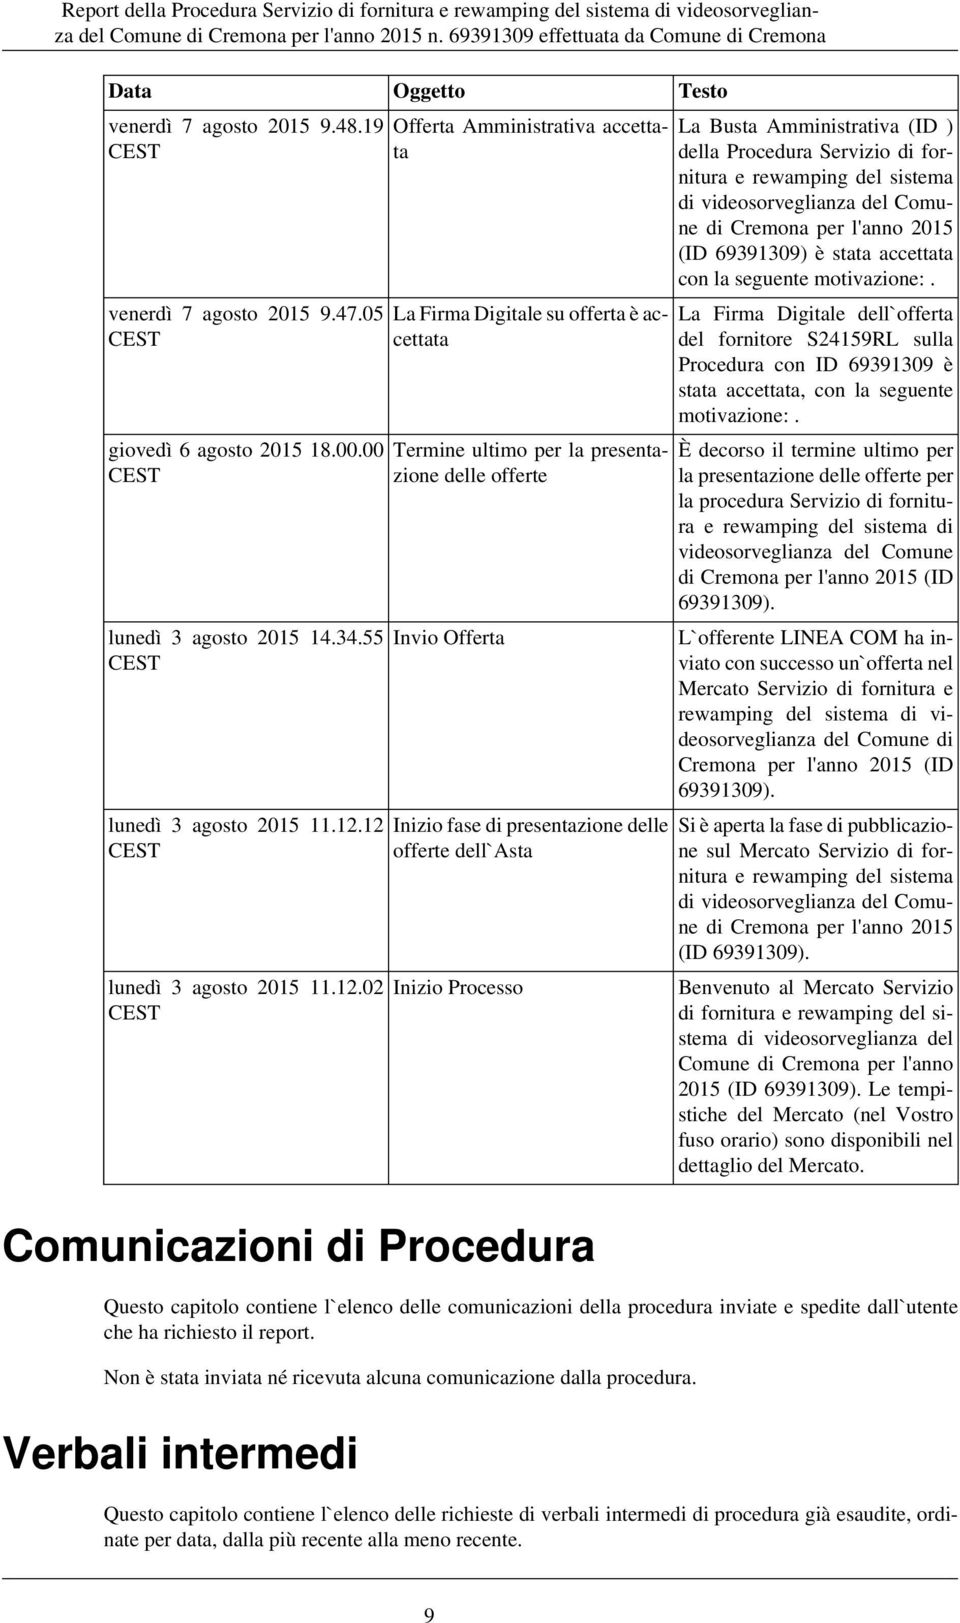 delle offerte dell`asta Inizio Processo La Busta Amministrativa (ID ) della Procedura Servizio di fornitura e rewamping del sistema di videosorveglianza del Comune di Cremona per l'anno 2015 (ID